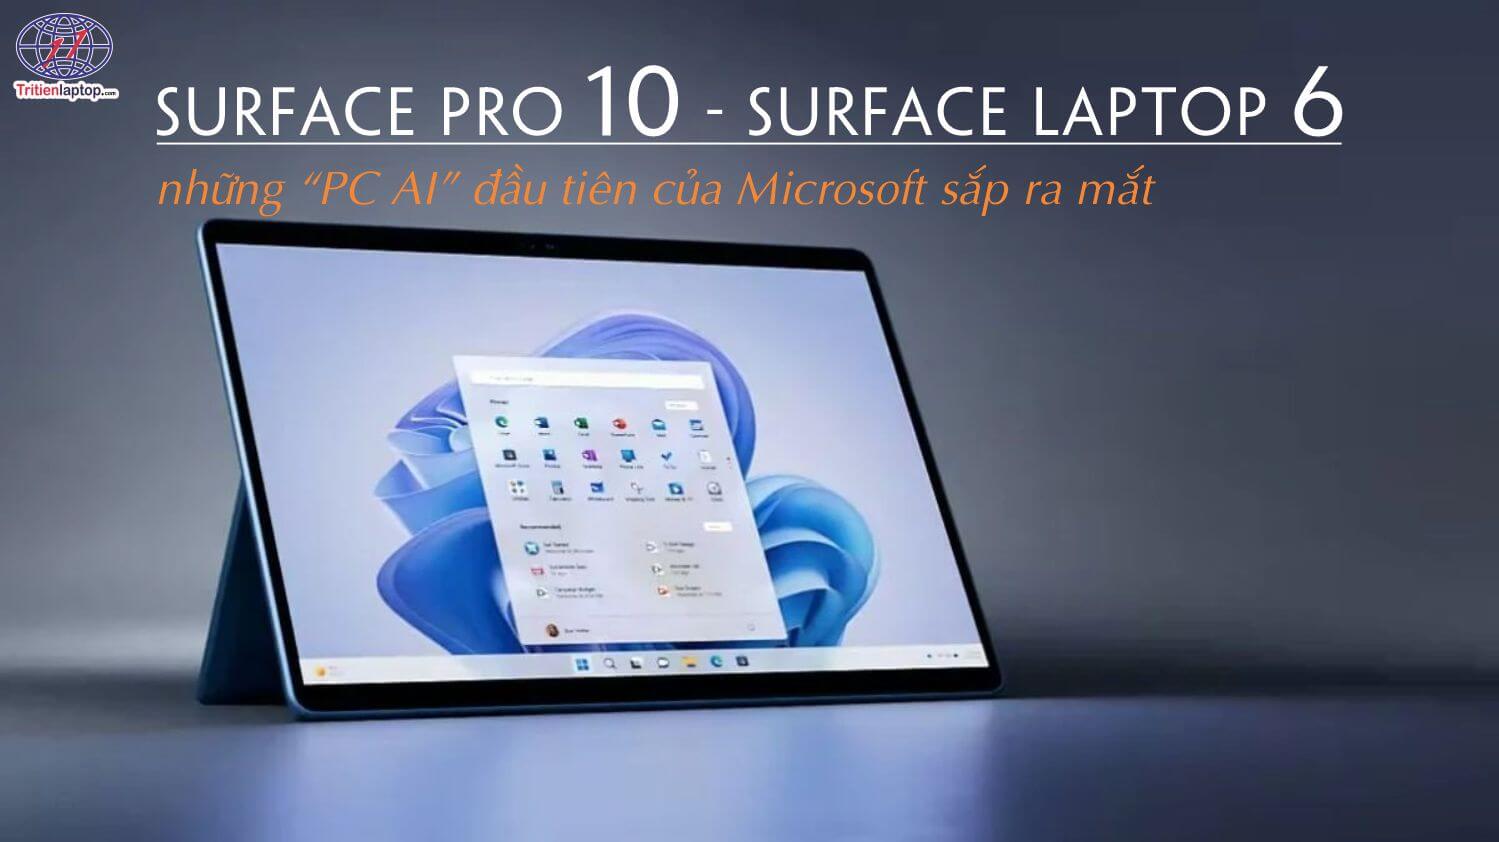 Surface Pro 10 và Surface Laptop 6 những “PC AI” đầu tiên của Microsoft sắp ra mắt tháng 3 này